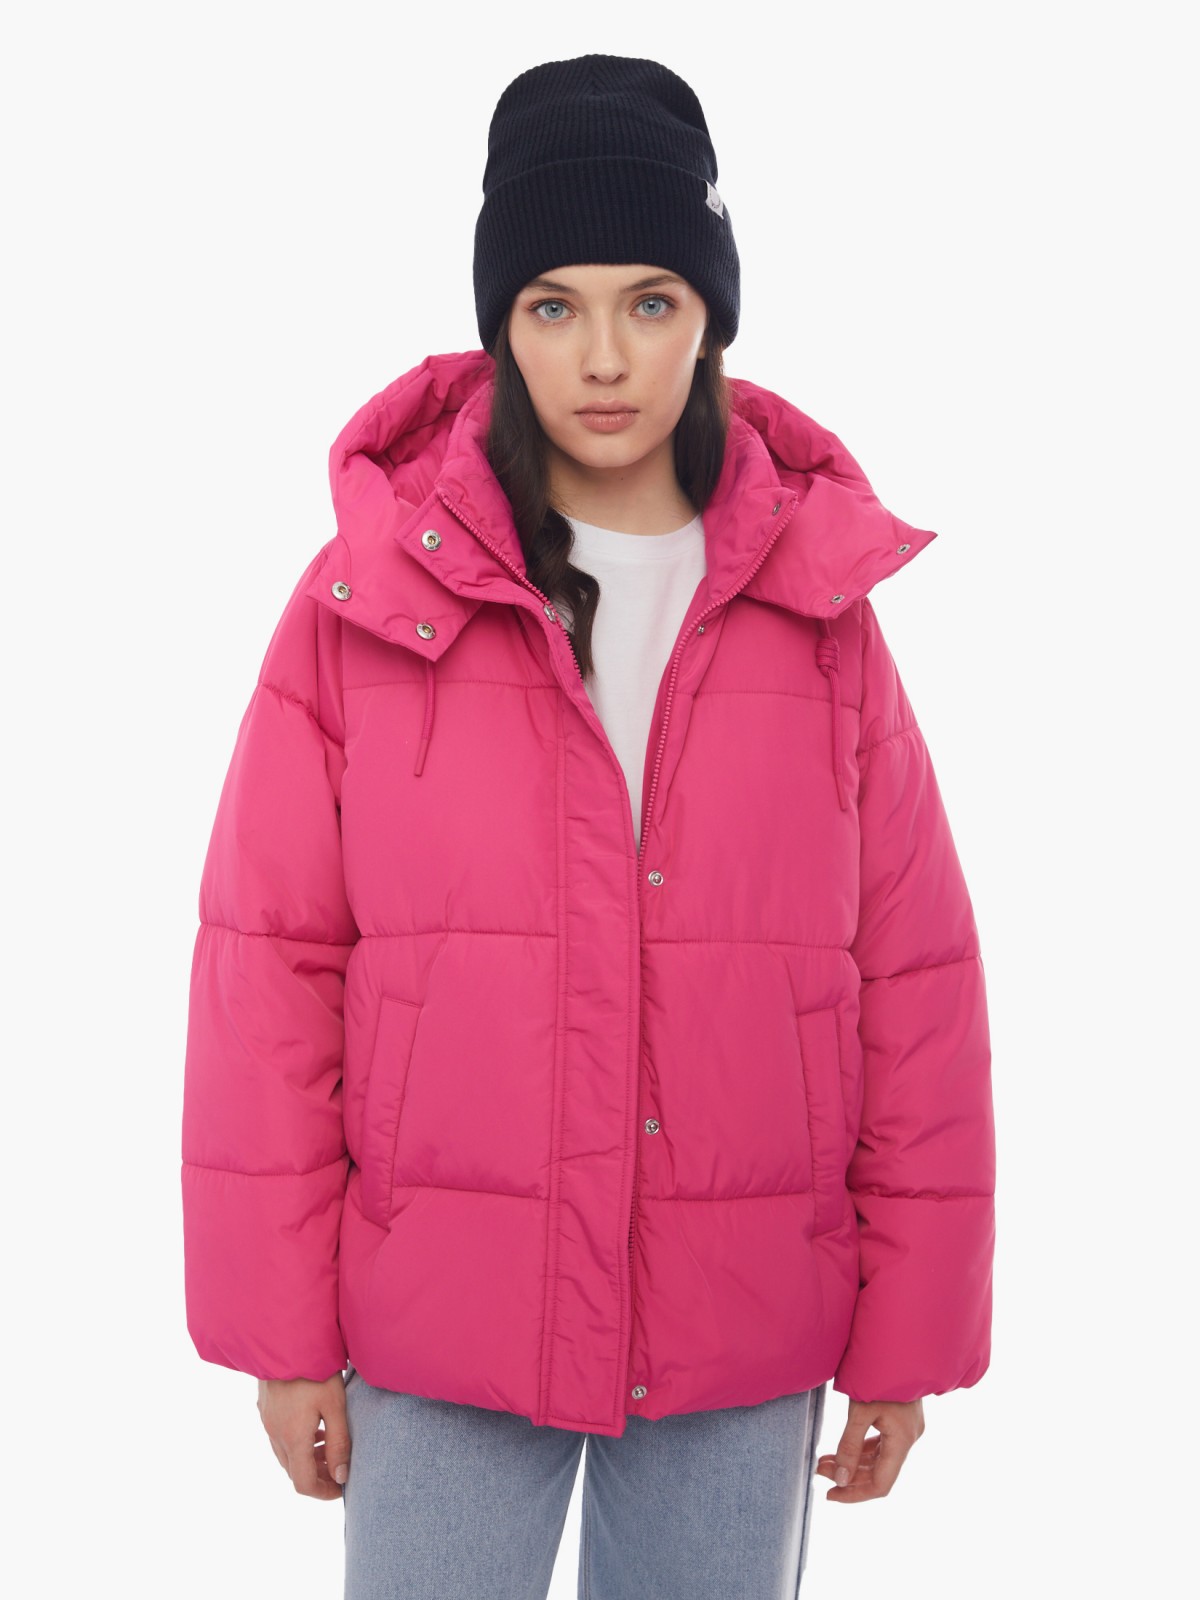 Тёплая укороченная дутая куртка с капюшоном zolla 024125112434, цвет фуксия, размер XS